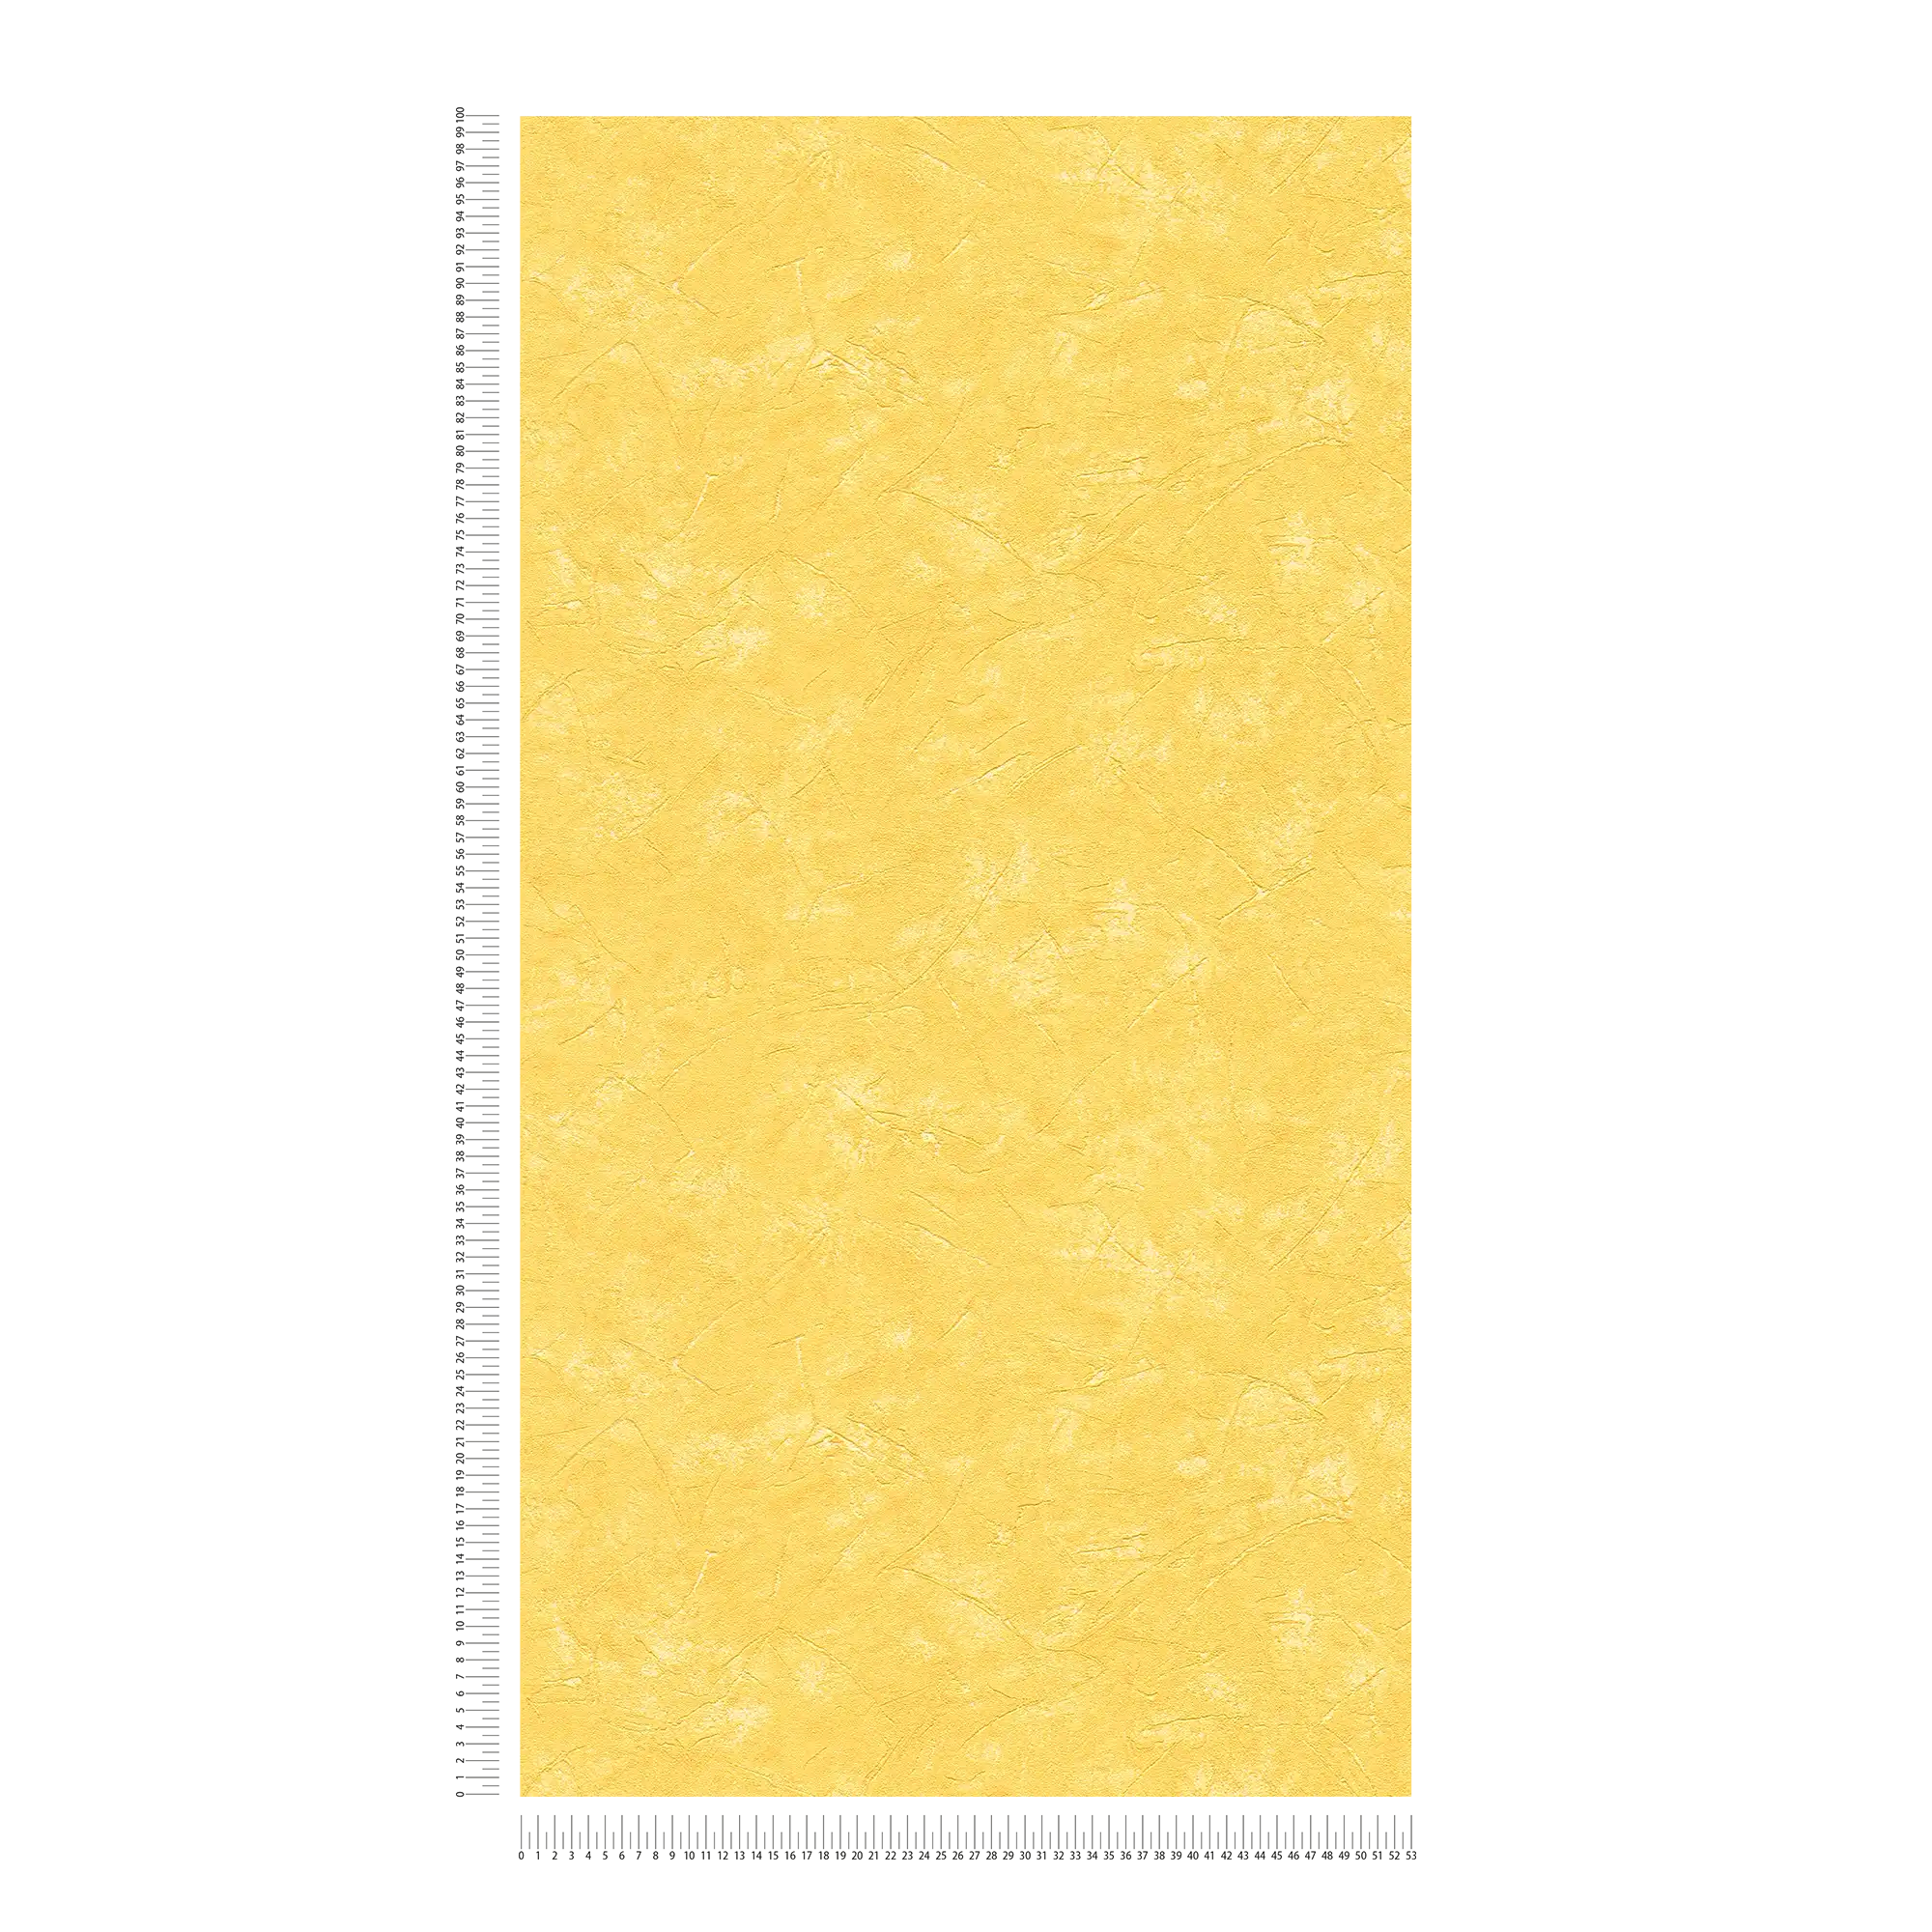             Gipsvezelbehang zon geel in mediterrane stijl
        